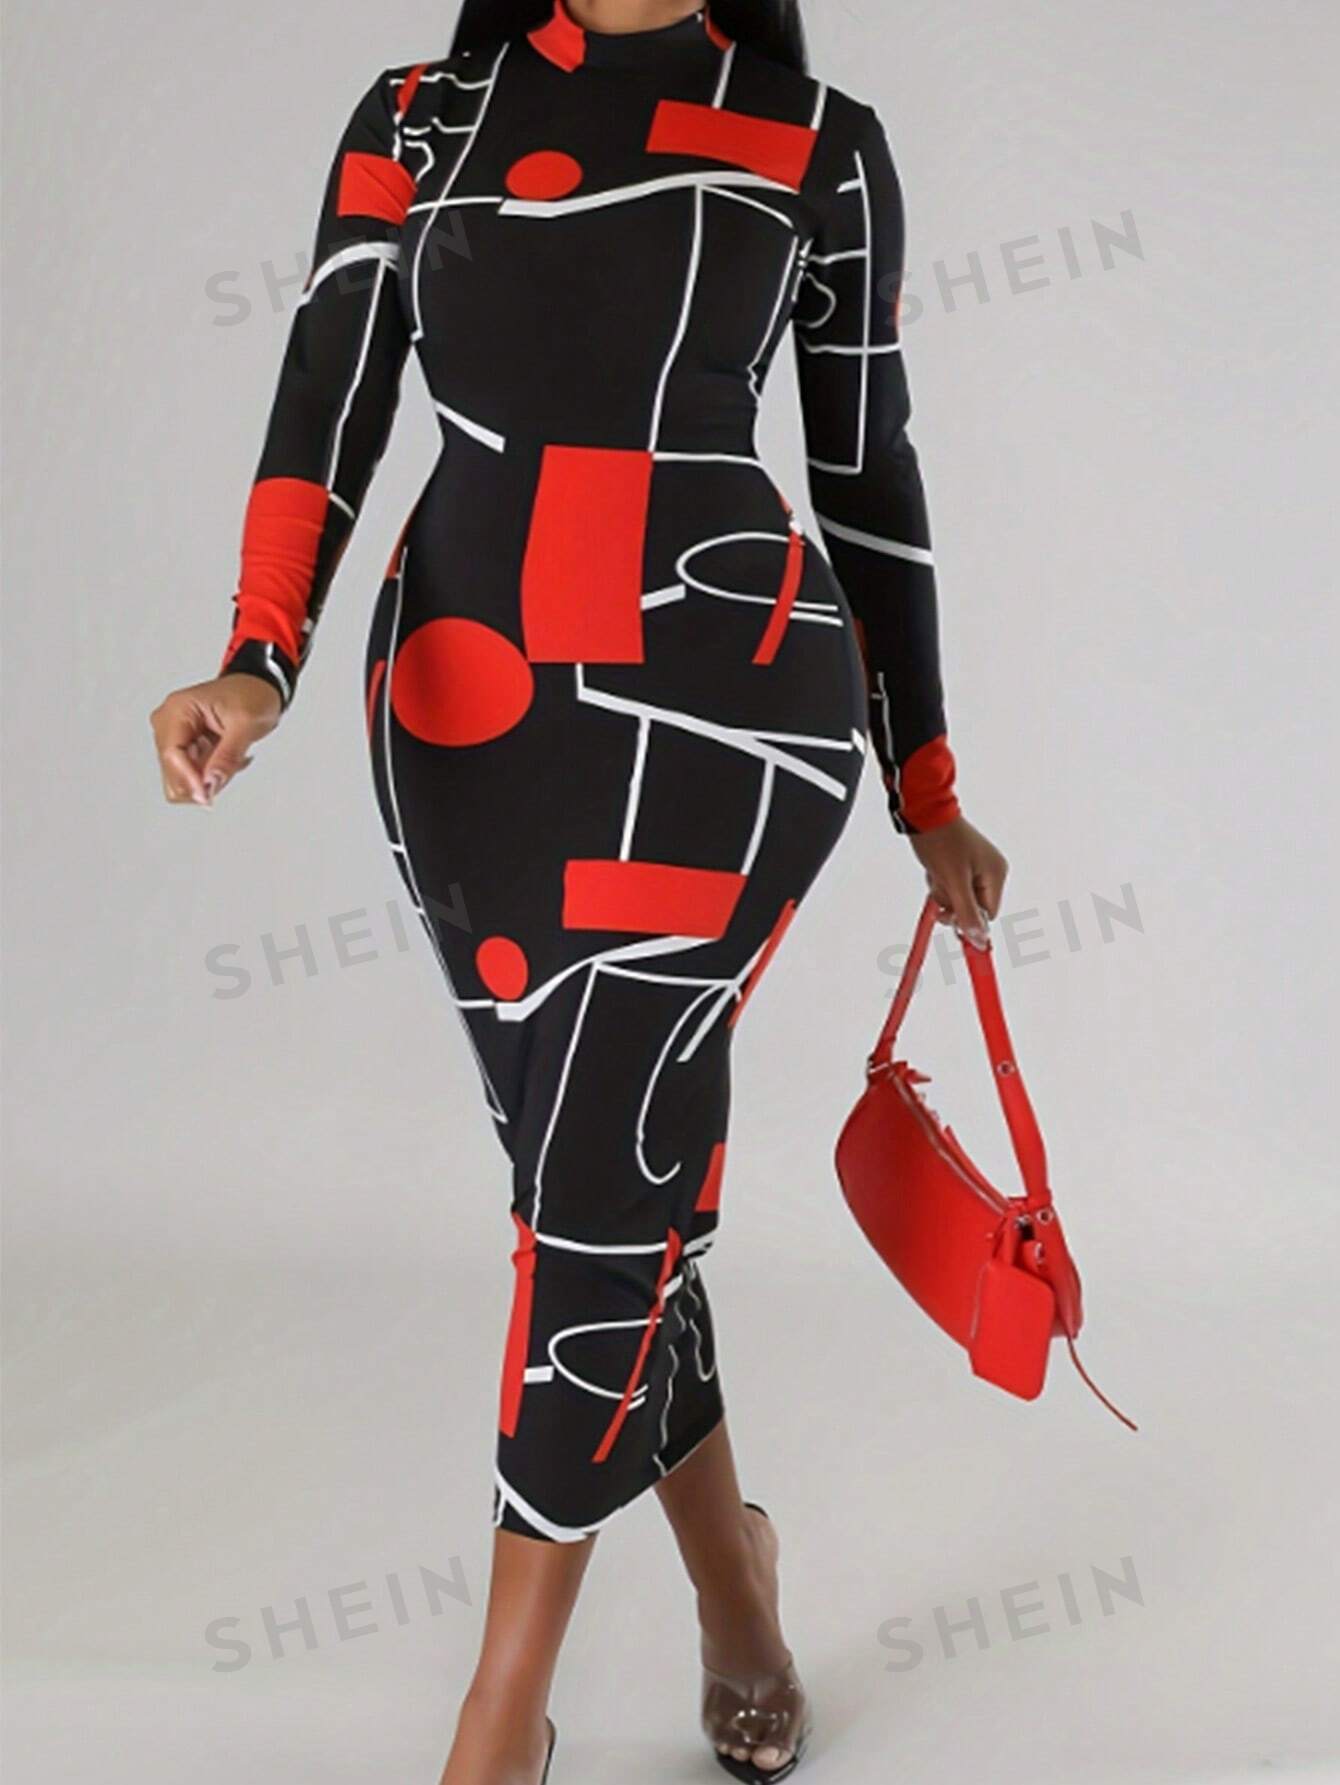 SHEIN Lady Женское облегающее платье с воротником-стойкой и произвольным принтом, красный и черный женское платье сексуальное облегающее мини платье с высоким воротником и принтом прозрачное сетчатое облегающее платье с длинным рукавом